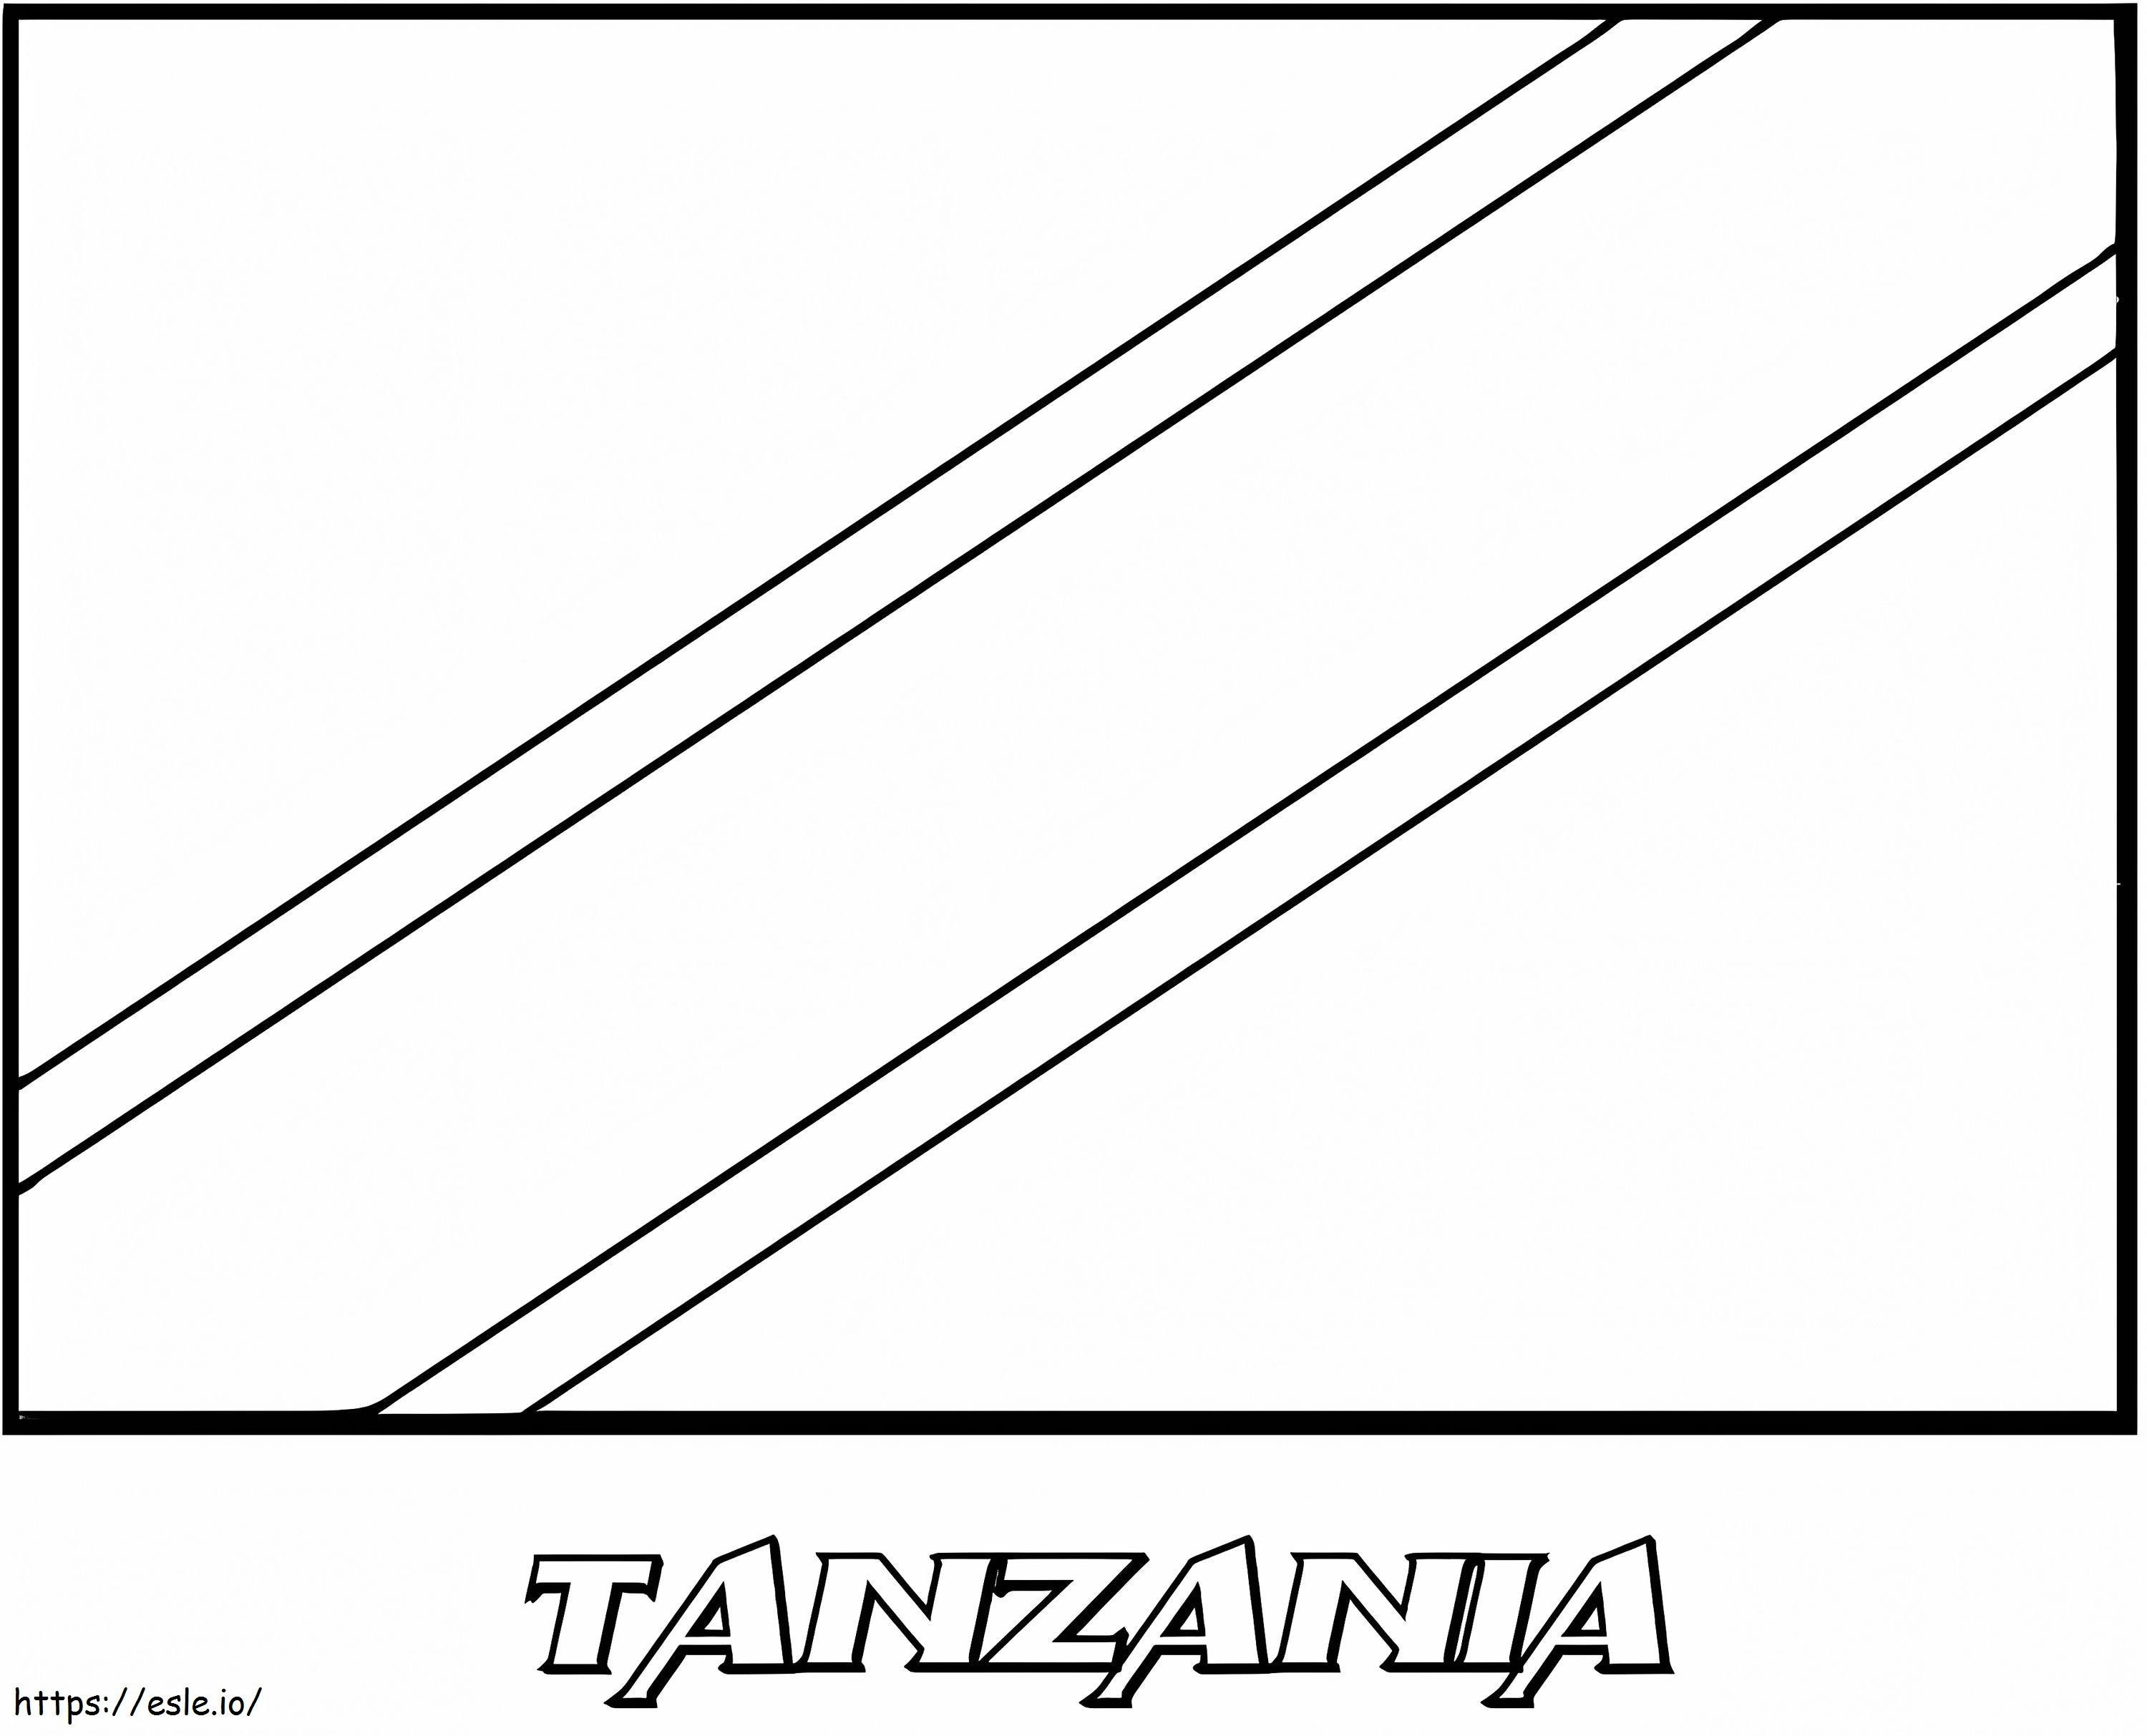 Bendera Tanzania Gambar Mewarnai